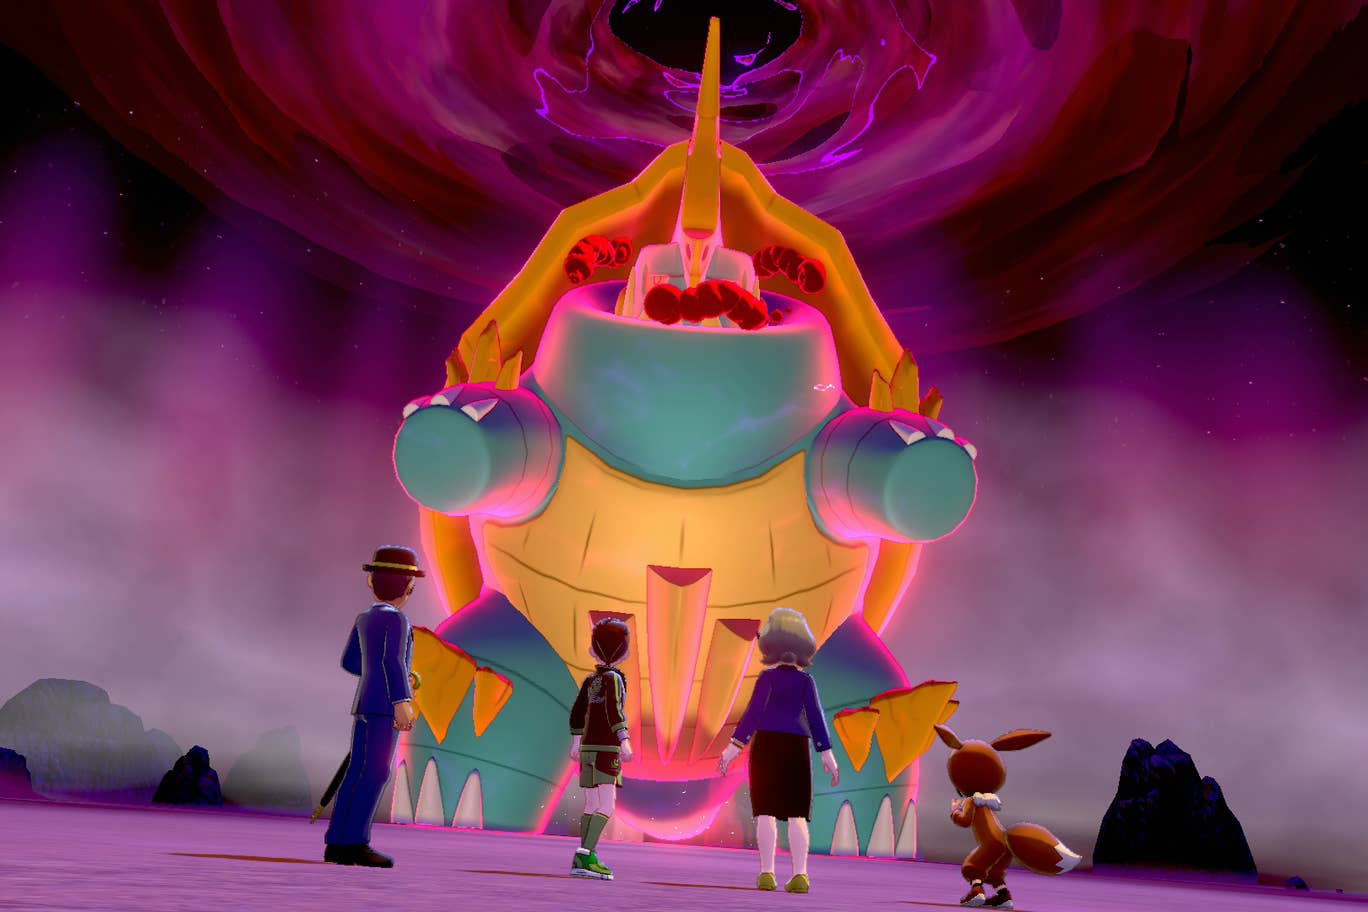 Novo evento Max Raid de Pokémon Sword and Shield já está rolando - confira tudo o que você precisa saber